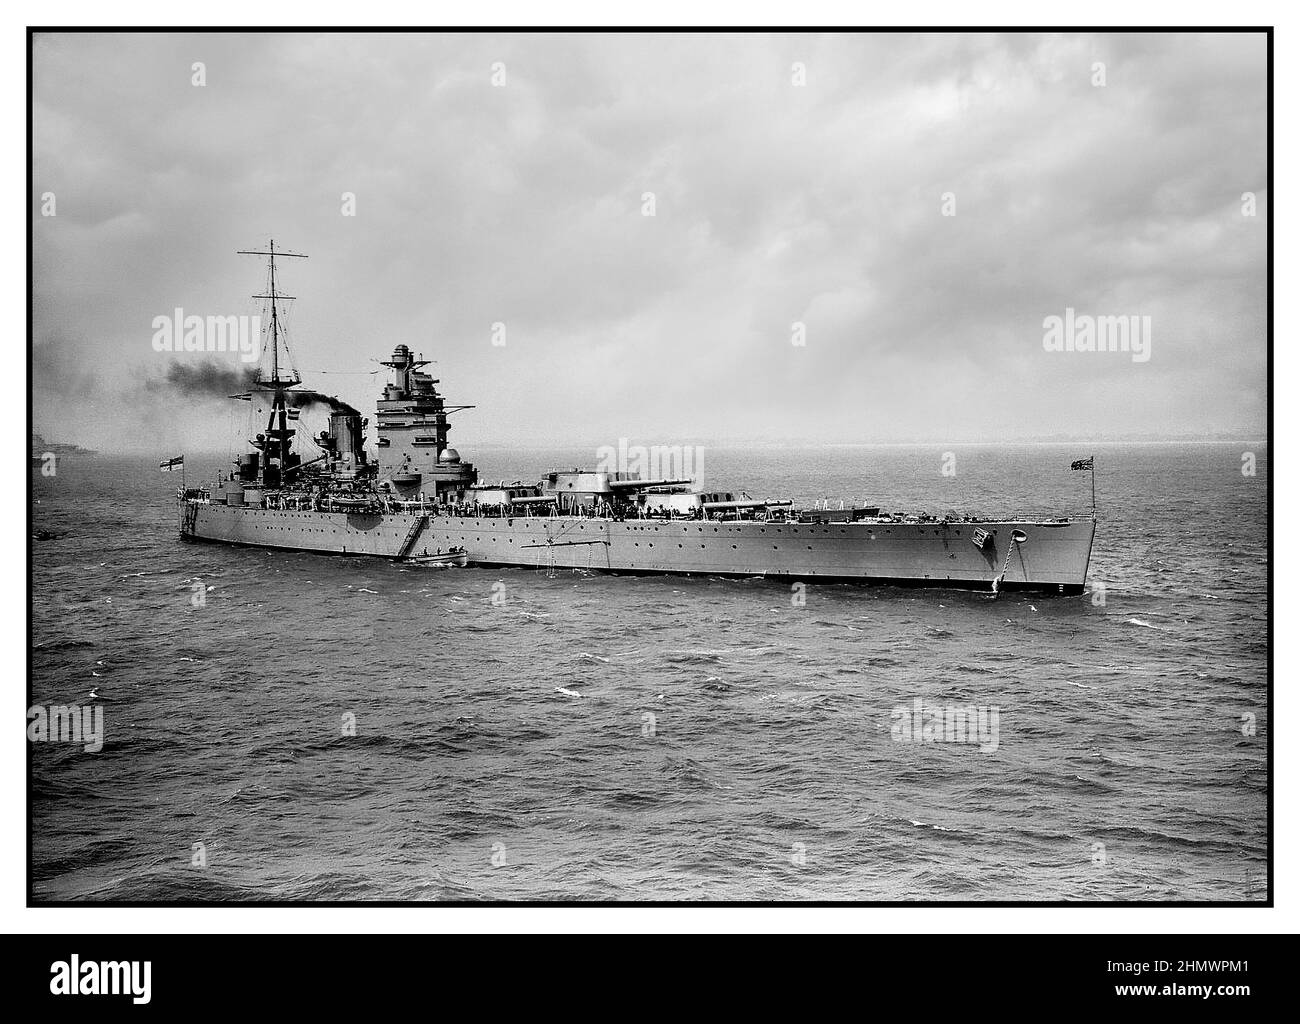 HMS Rodney WW2 war eines von zwei Schlachtschiffen der Nelson-Klasse, die Mitte 1920s für die Royal Navy gebaut wurden. Das Schiff wurde 1928 in Dienst gestellt und verbrachte ihre Friedenslaufbahn bei der Atlantic- und Home-Flotte, die manchmal als Flaggschiff diente, als ihr Schwesterschiff, Nelson, umgebaut wurde. In den frühen Phasen des Zweiten Weltkriegs suchte sie nach deutschen Handelskriegen, nahm an der Norwegischen Kampagne Teil und begleitete Konvois im Atlantik. HMS Rodney spielte eine wichtige Rolle beim Untergang des deutschen Schlachtschiffs Bismarck Mitte 1941. Stockfoto